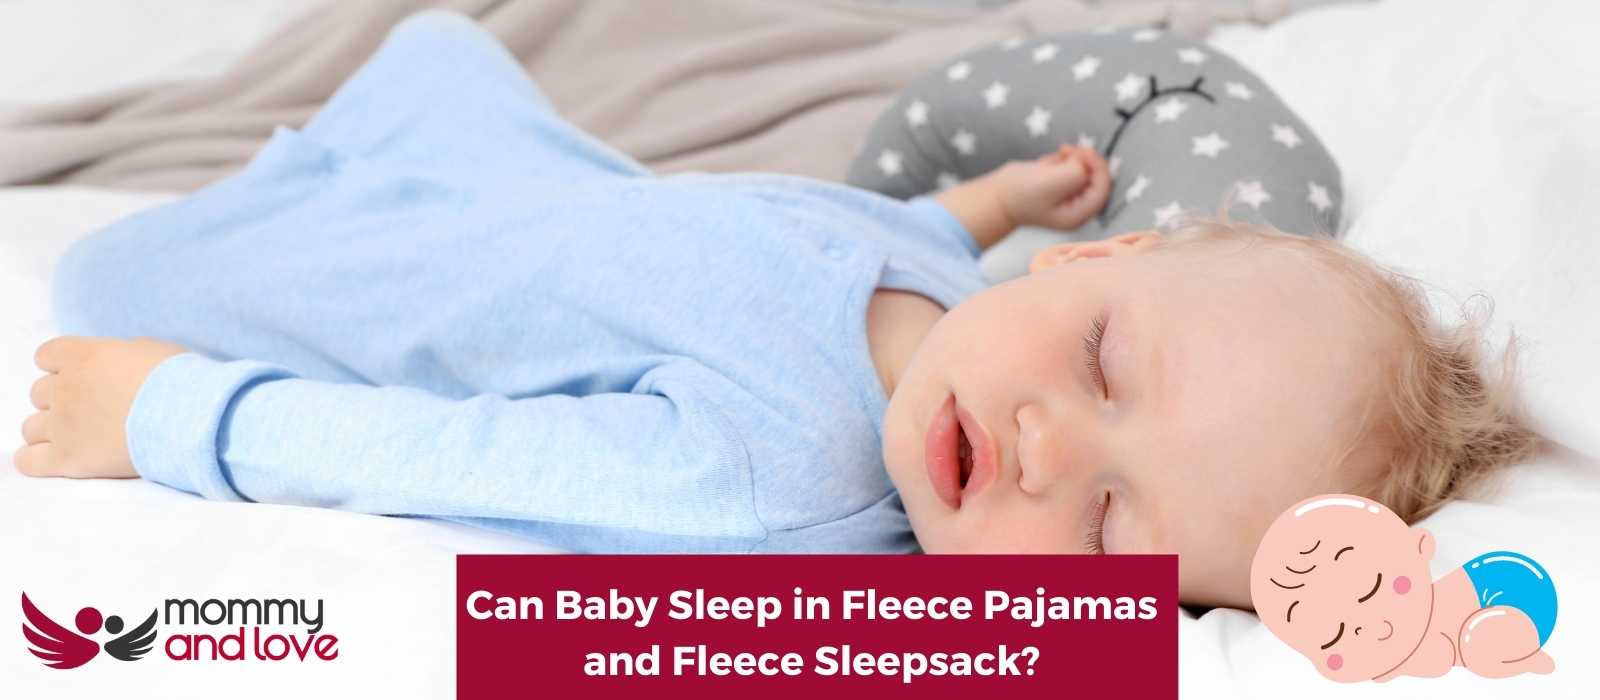 Can Baby Sleep in Fleece Pajamas and Fleece Sleepsack